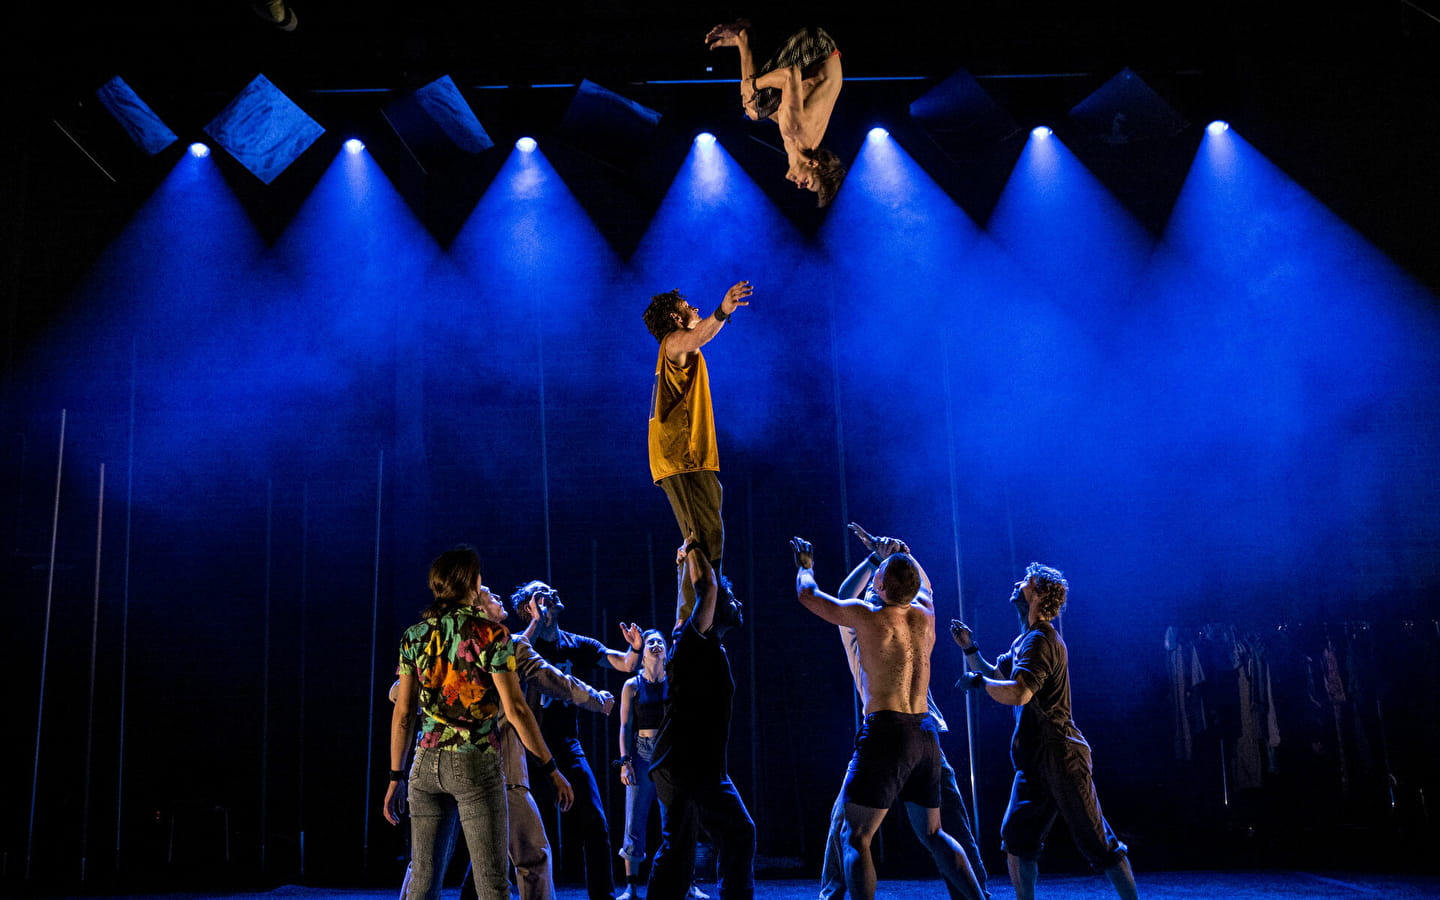 Cirque contemporain par les acrobates Gravity & Other Myths